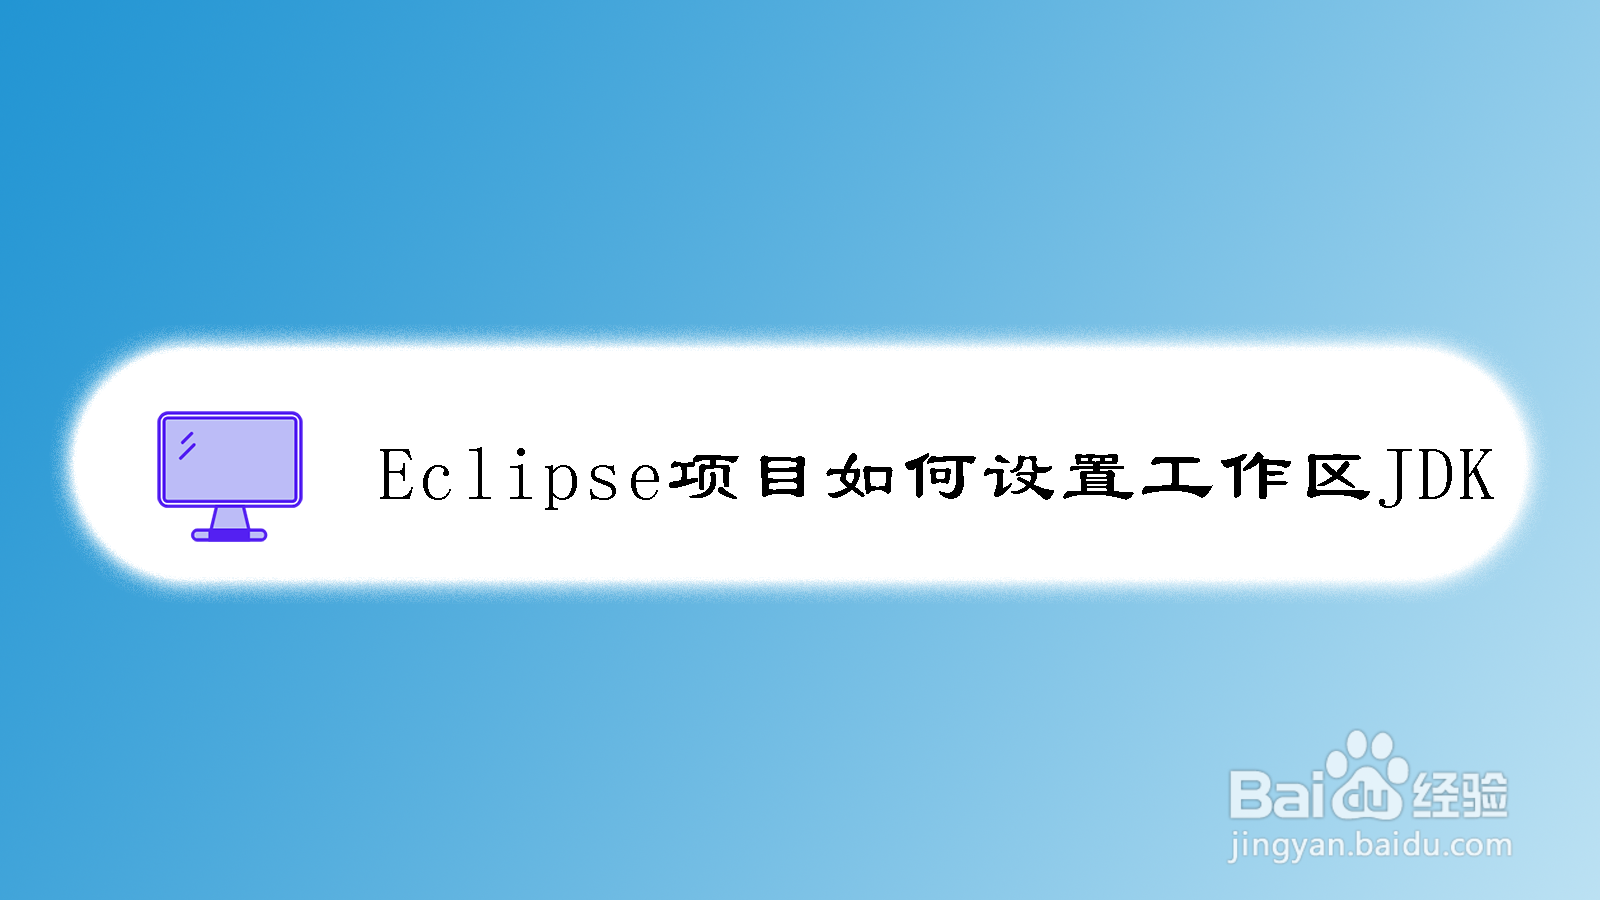 <b>Eclipse项目如何设置工作区JDK</b>